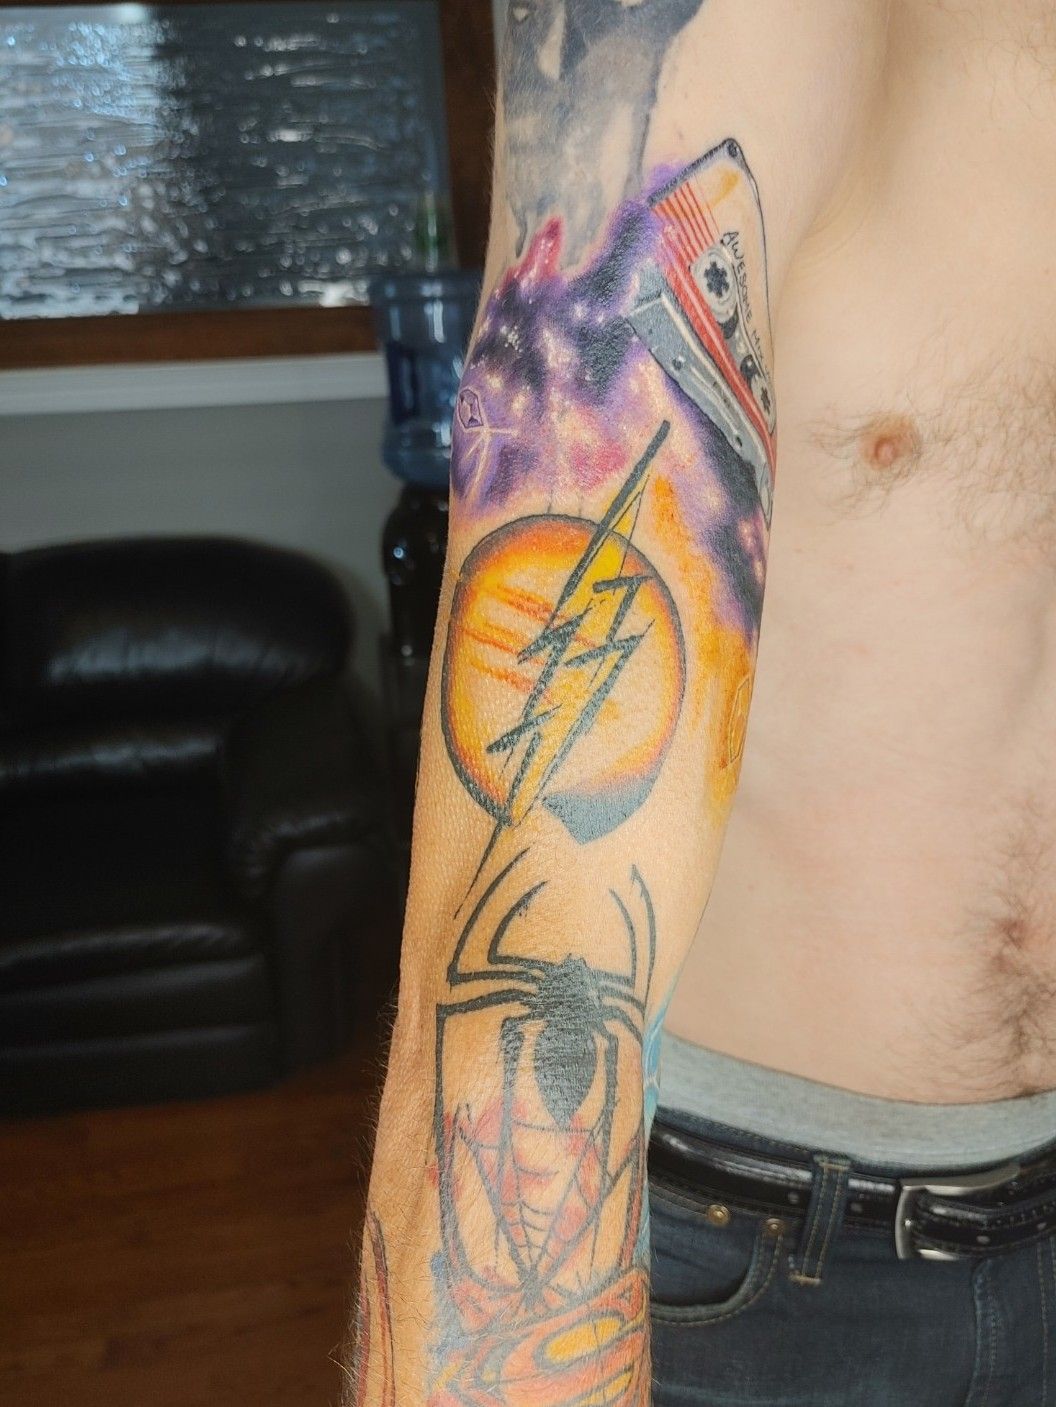 I Love Superhero Tattoos  Cosmic half sleeve